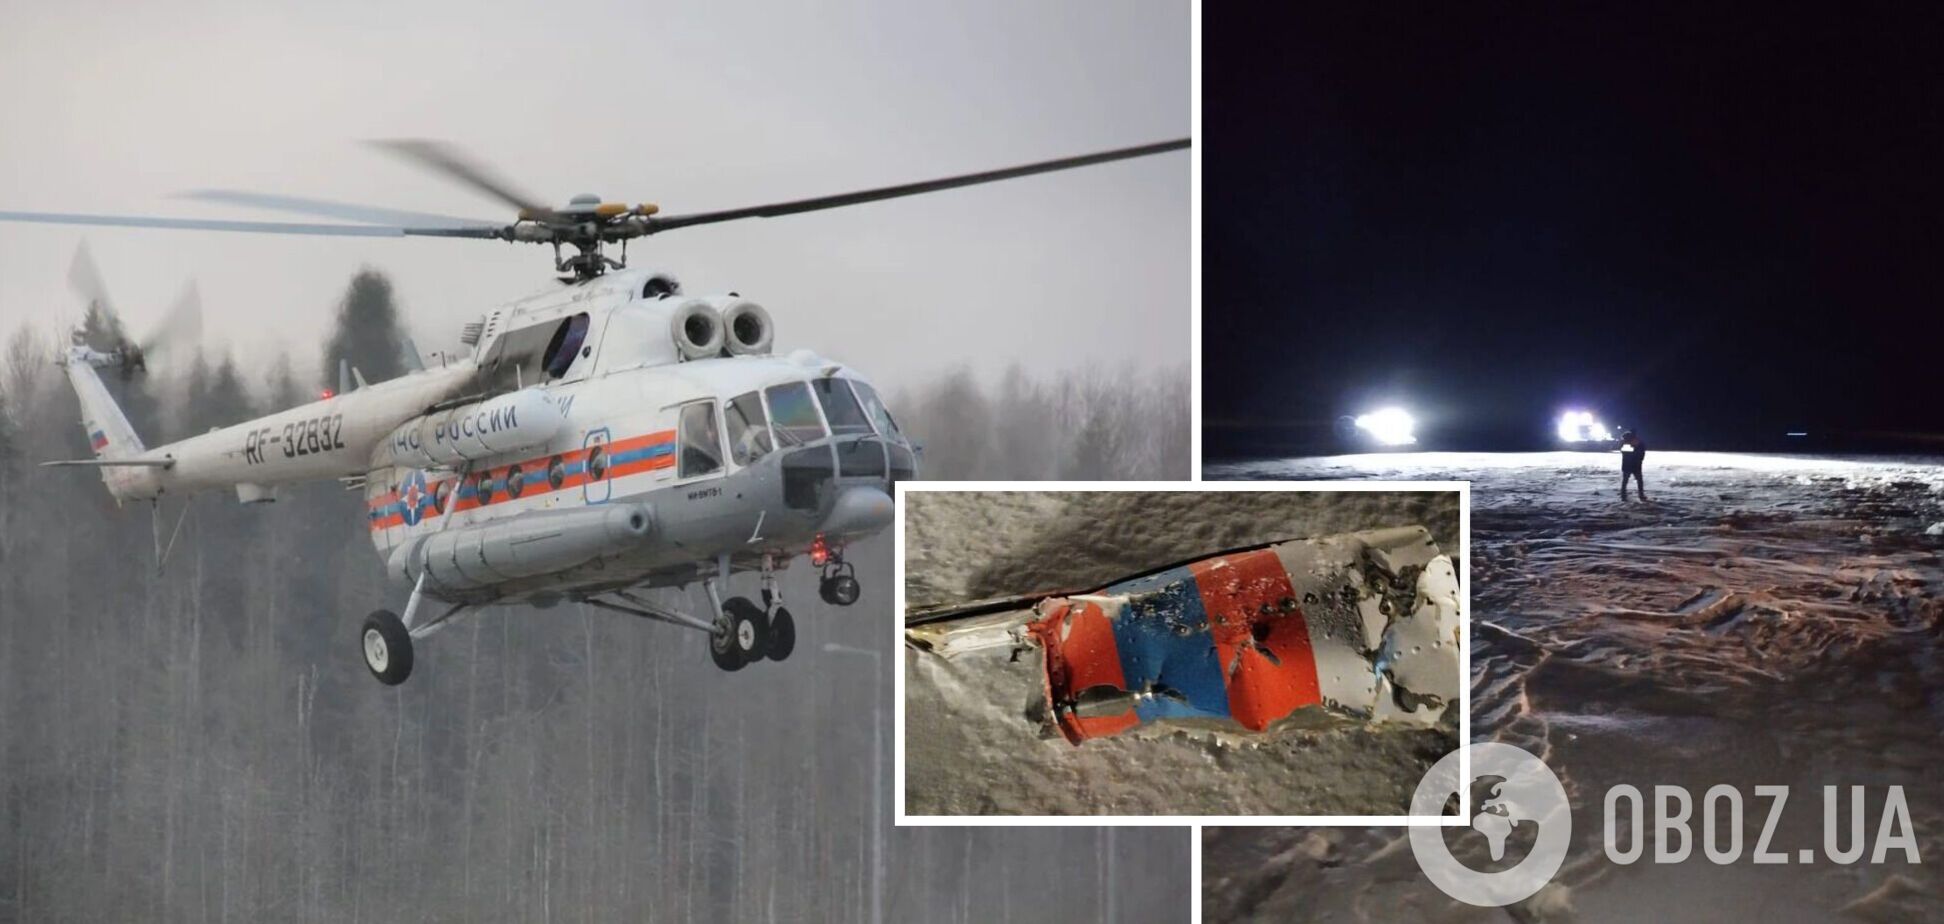 В России упал и утонул в озере спасательный вертолет Ми-8, экипаж погиб. Фото